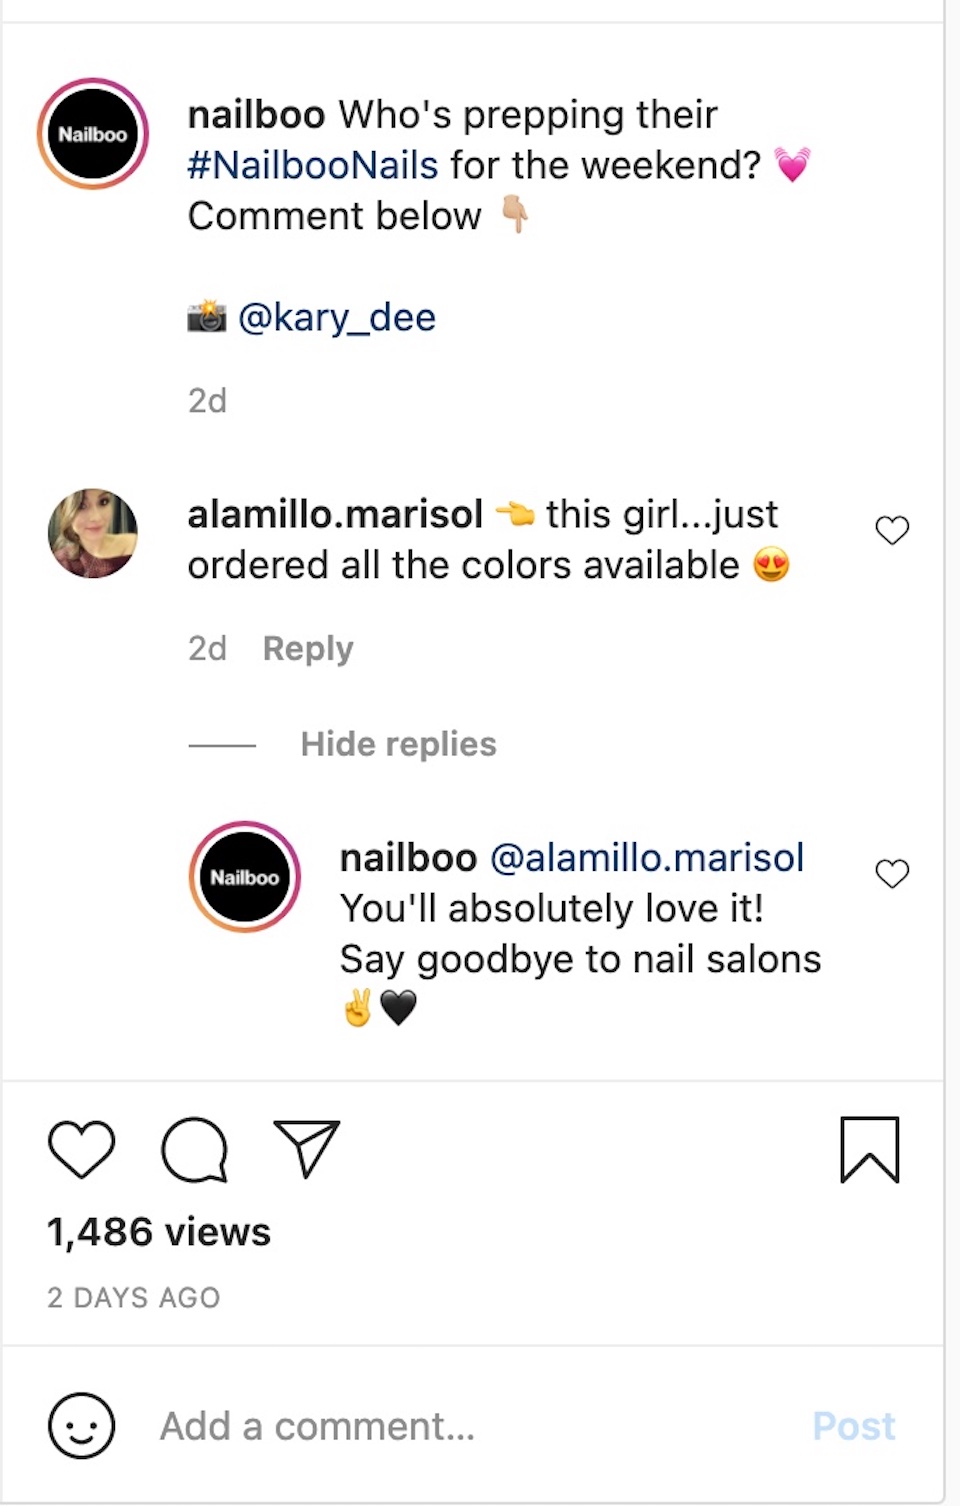 美甲产品公司 Nailboo 在其 Instagram 账户上的一条帖子中与评论者互动。